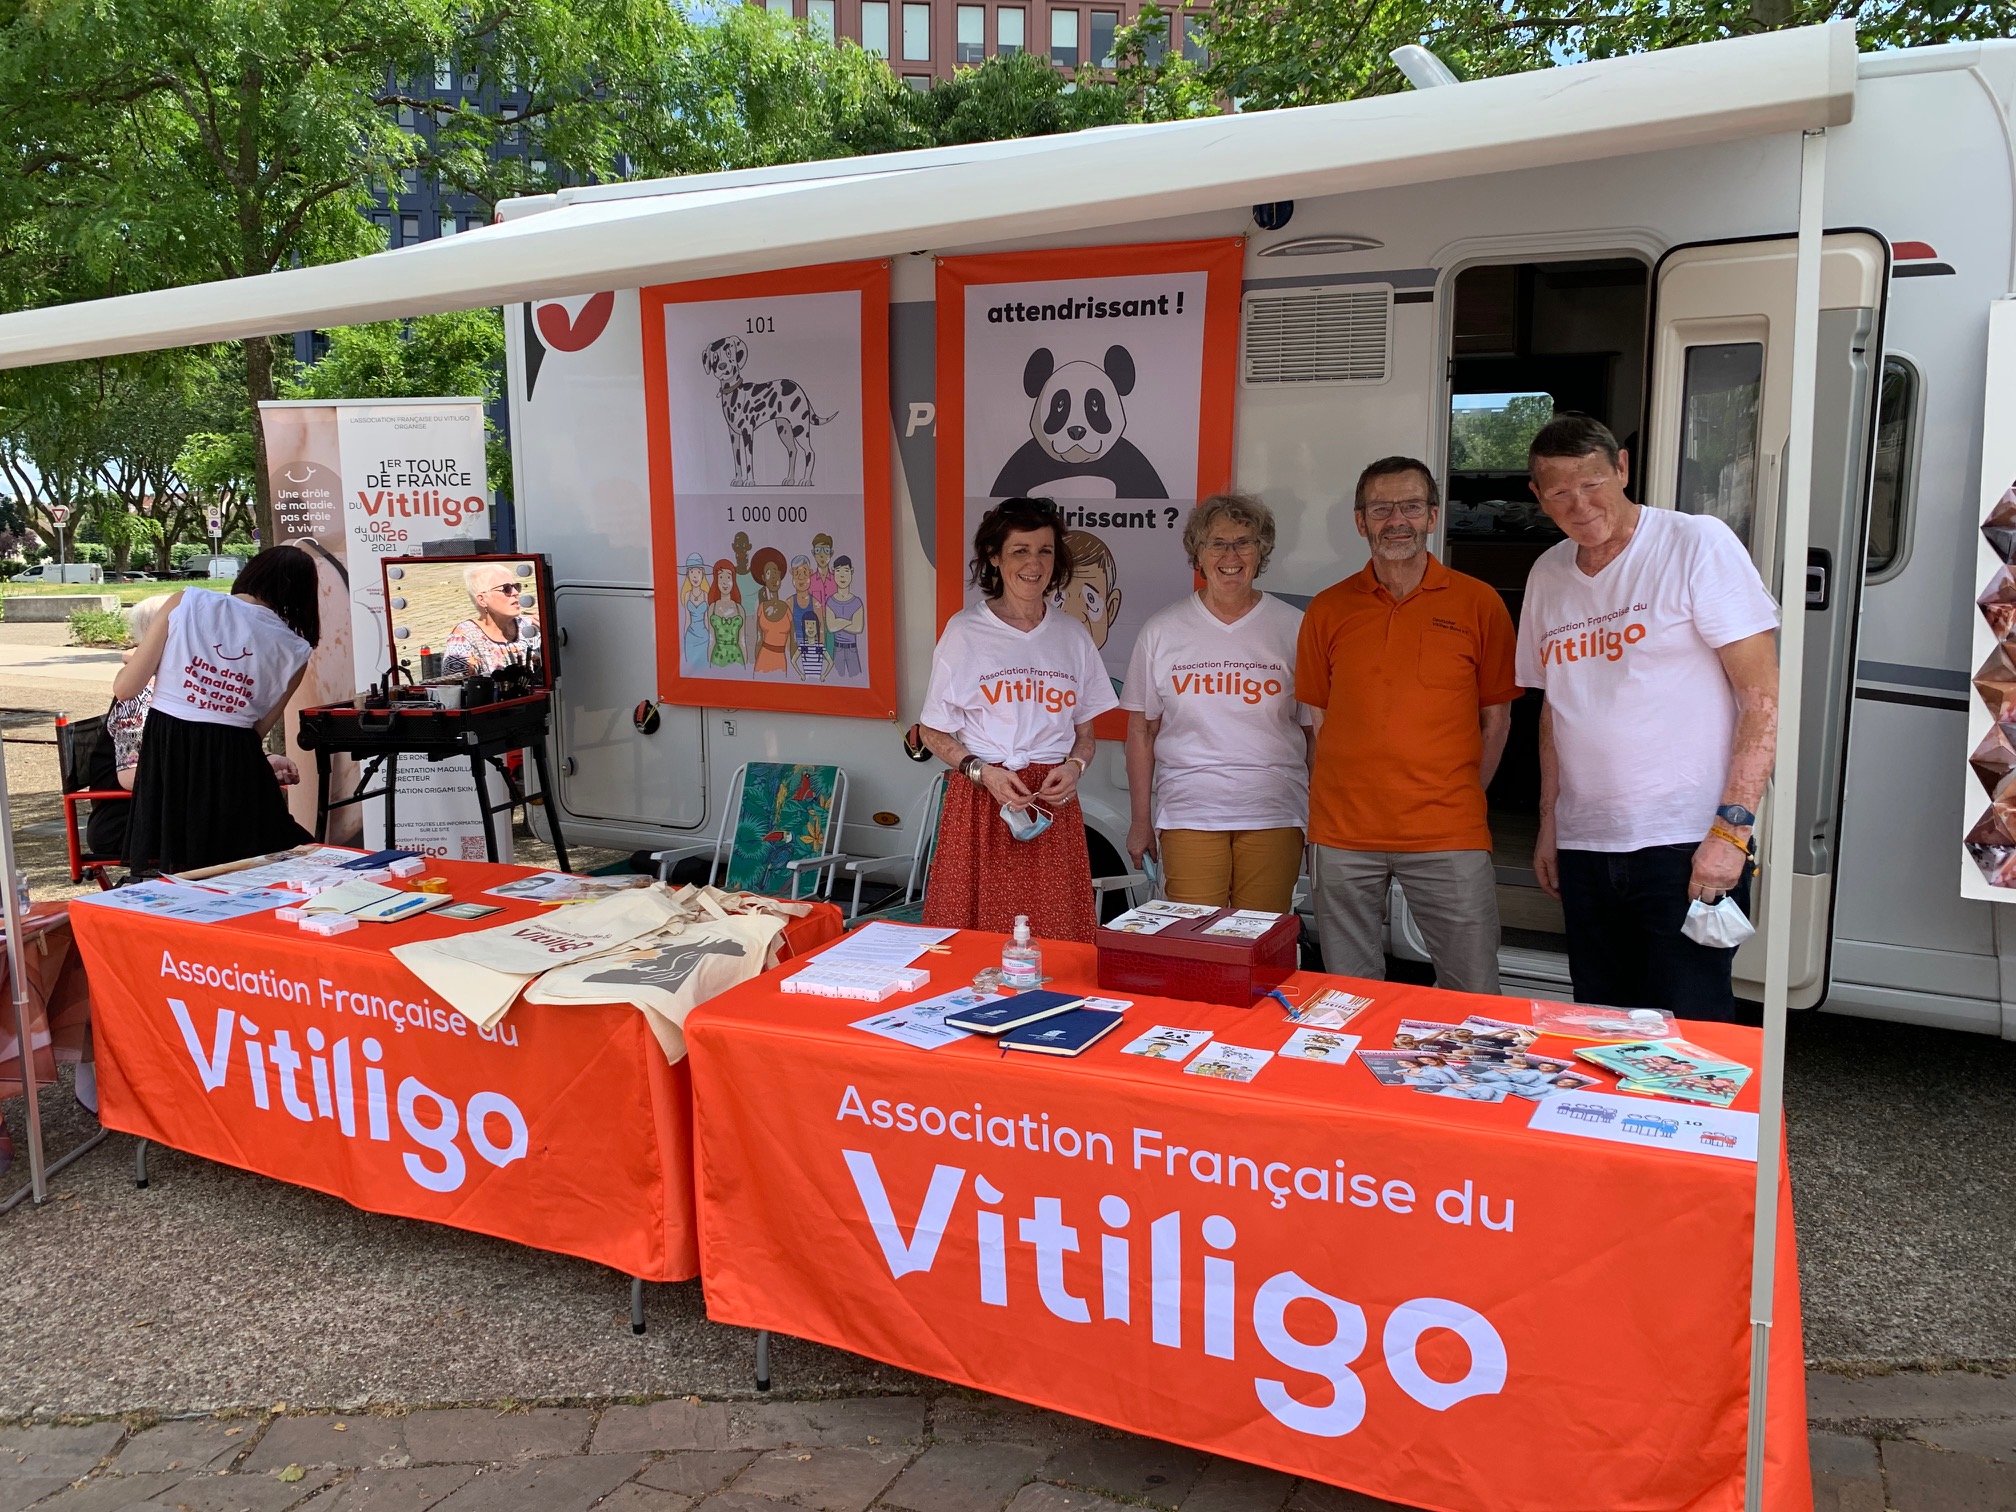 Tour de France du vitiligo, 2-26 June 2021